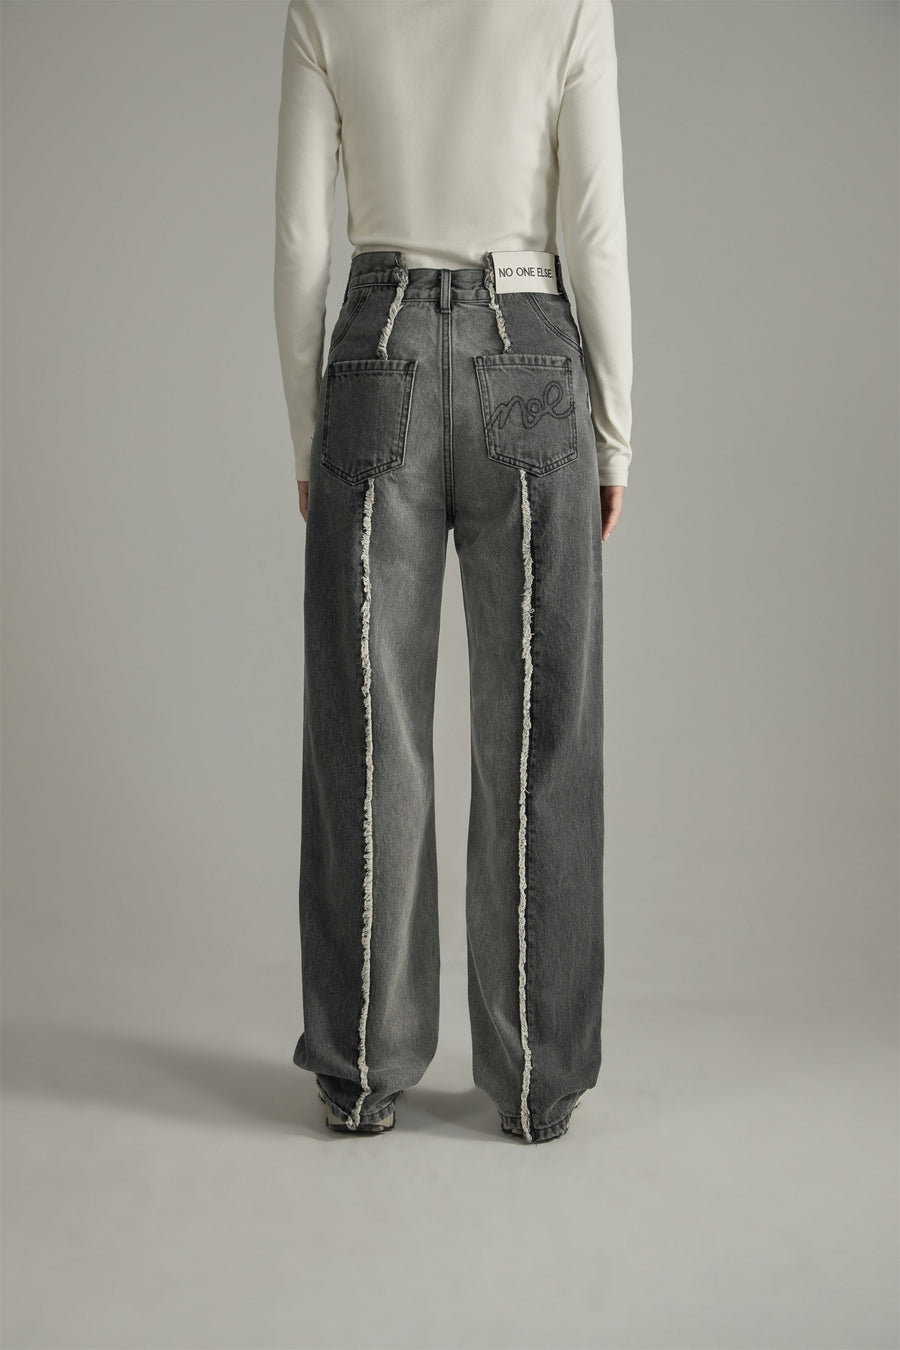 CHUU Frayed Lined Denim Jeans